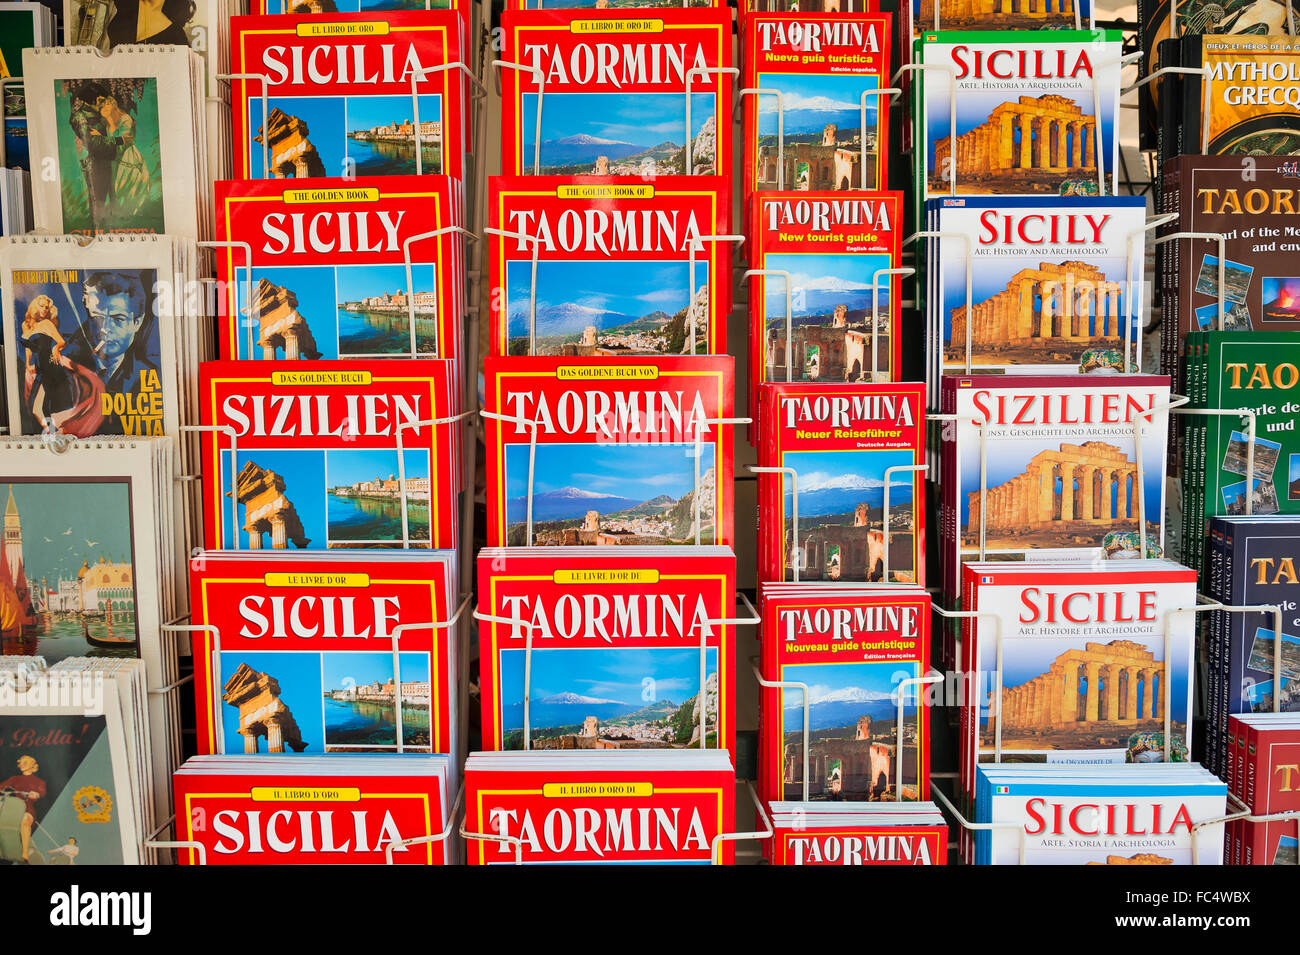 Libro guía de Sicilia, la vista de una pantalla de guía de libros en diferentes idiomas en una calle en Taormina, Sicilia. Foto de stock